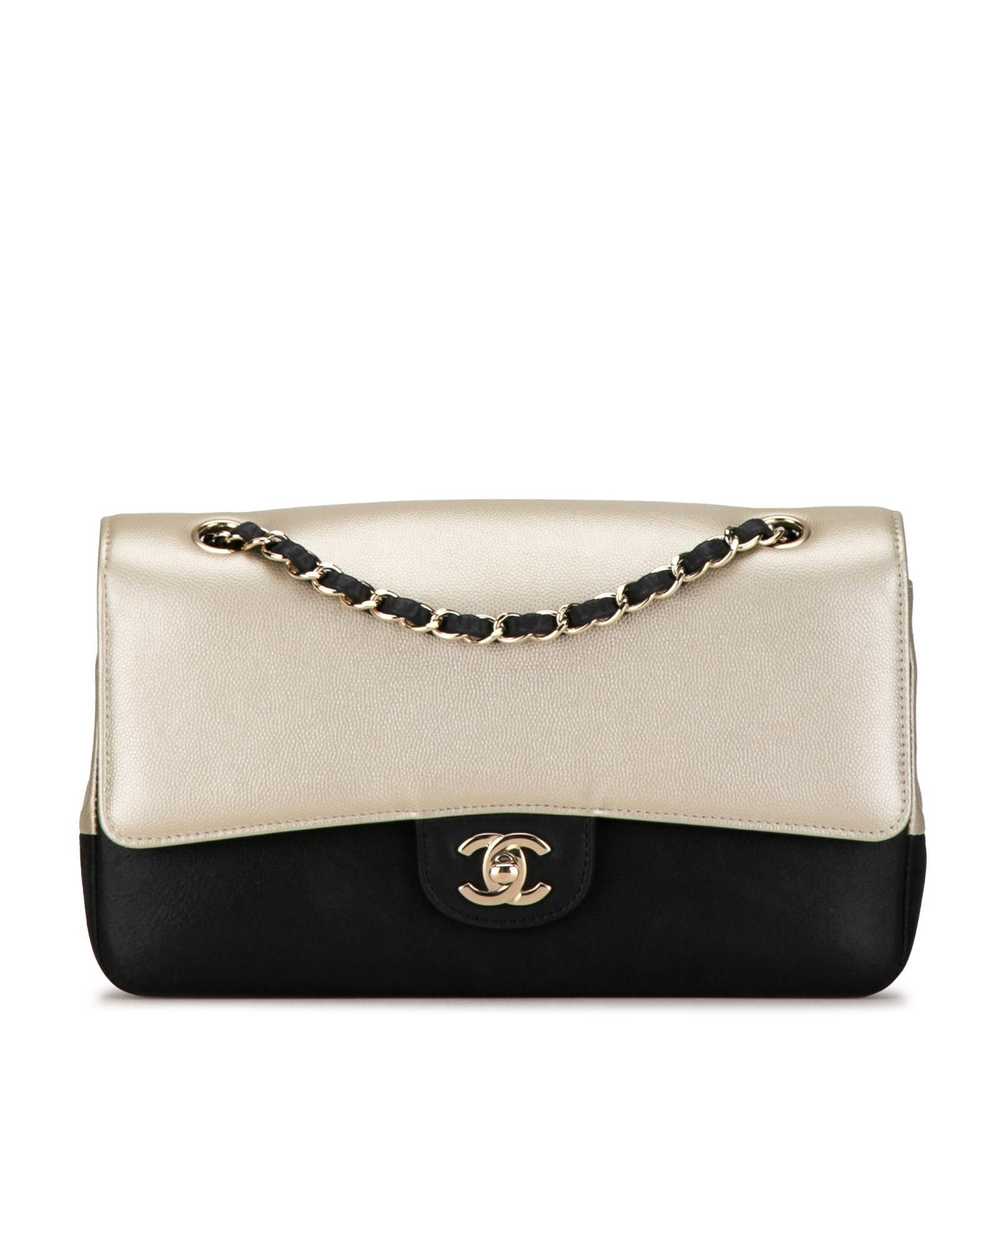 Chanel Bicolor Caviar Double Flap Shoulder Bag - image 1